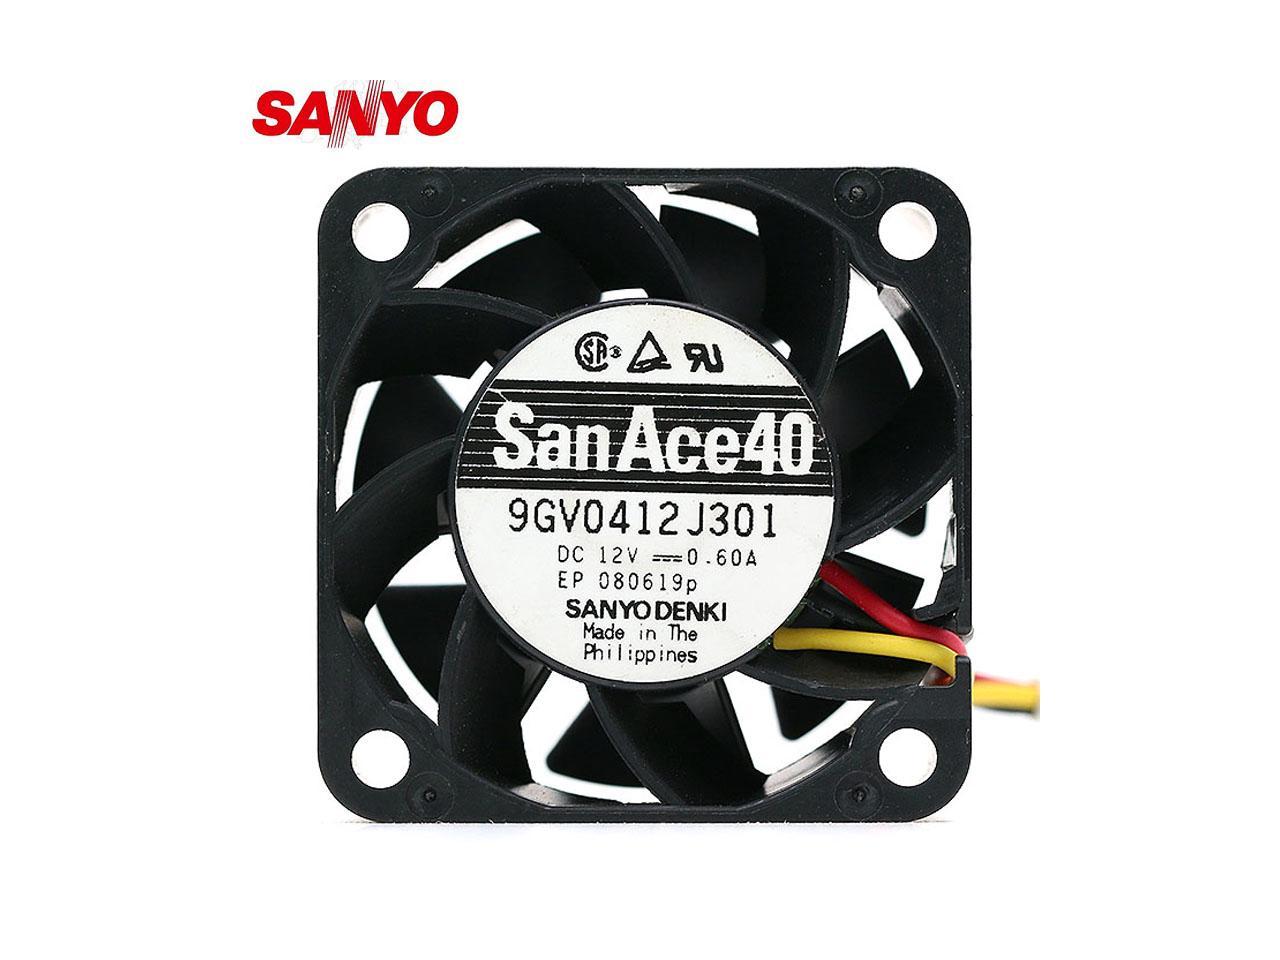 Sanyo-Denki 9SG1224P1G01 San Ace 120 Fan Lot of 4 24 VDC, 2A 